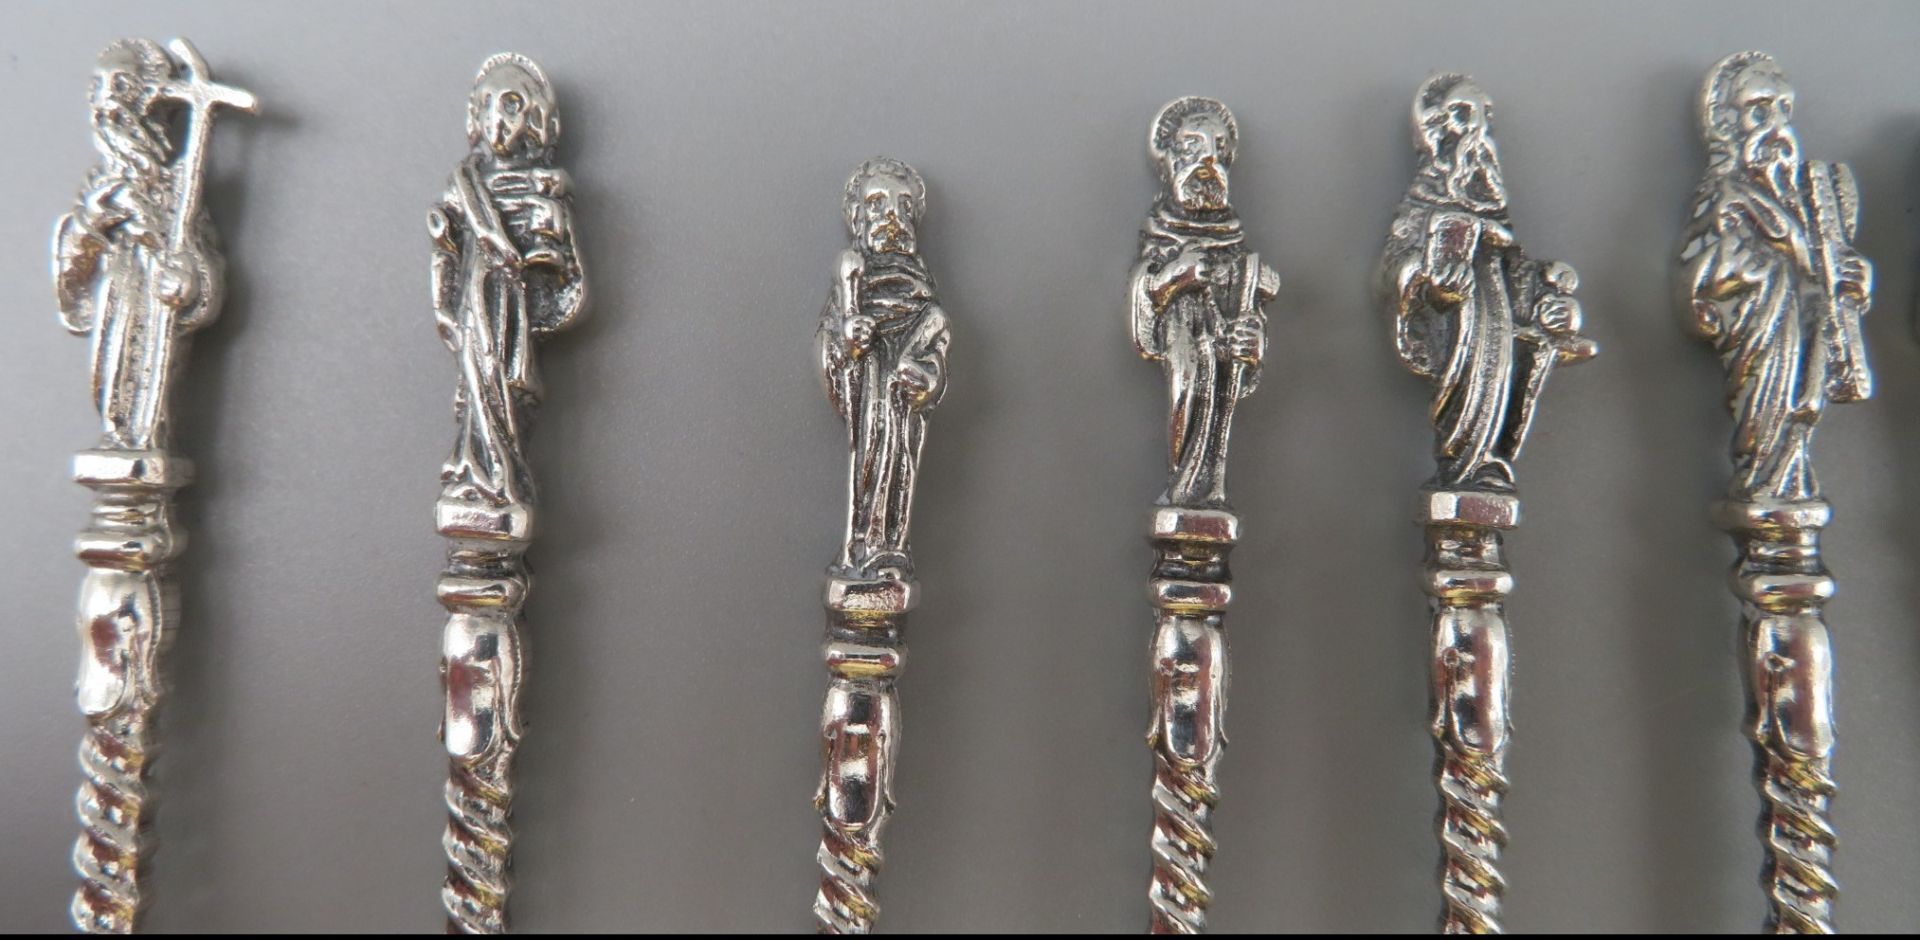 12 Gabeln, Griffe mit figuralen Motiven der 12 Apostel, versilbert, l 12 cm. - Image 2 of 2